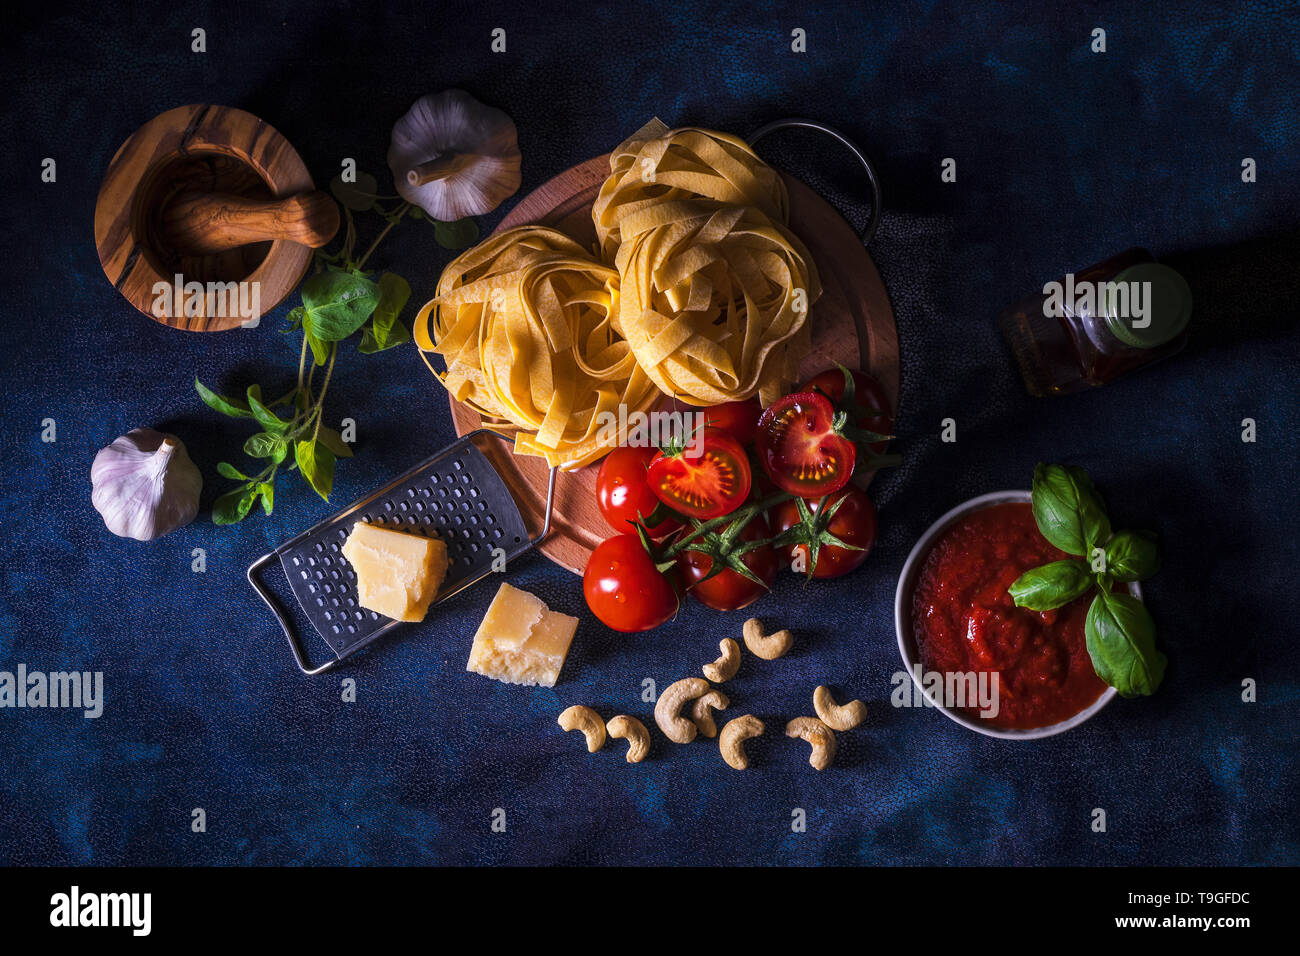 La tabella con gli ingredienti per fare il pesto di pomodoro. Pomodori, aglio, origano fresco e basilico erbe, bottiglia di olio d'oliva, alcune noci di acagiù, parmigiano, c Foto Stock